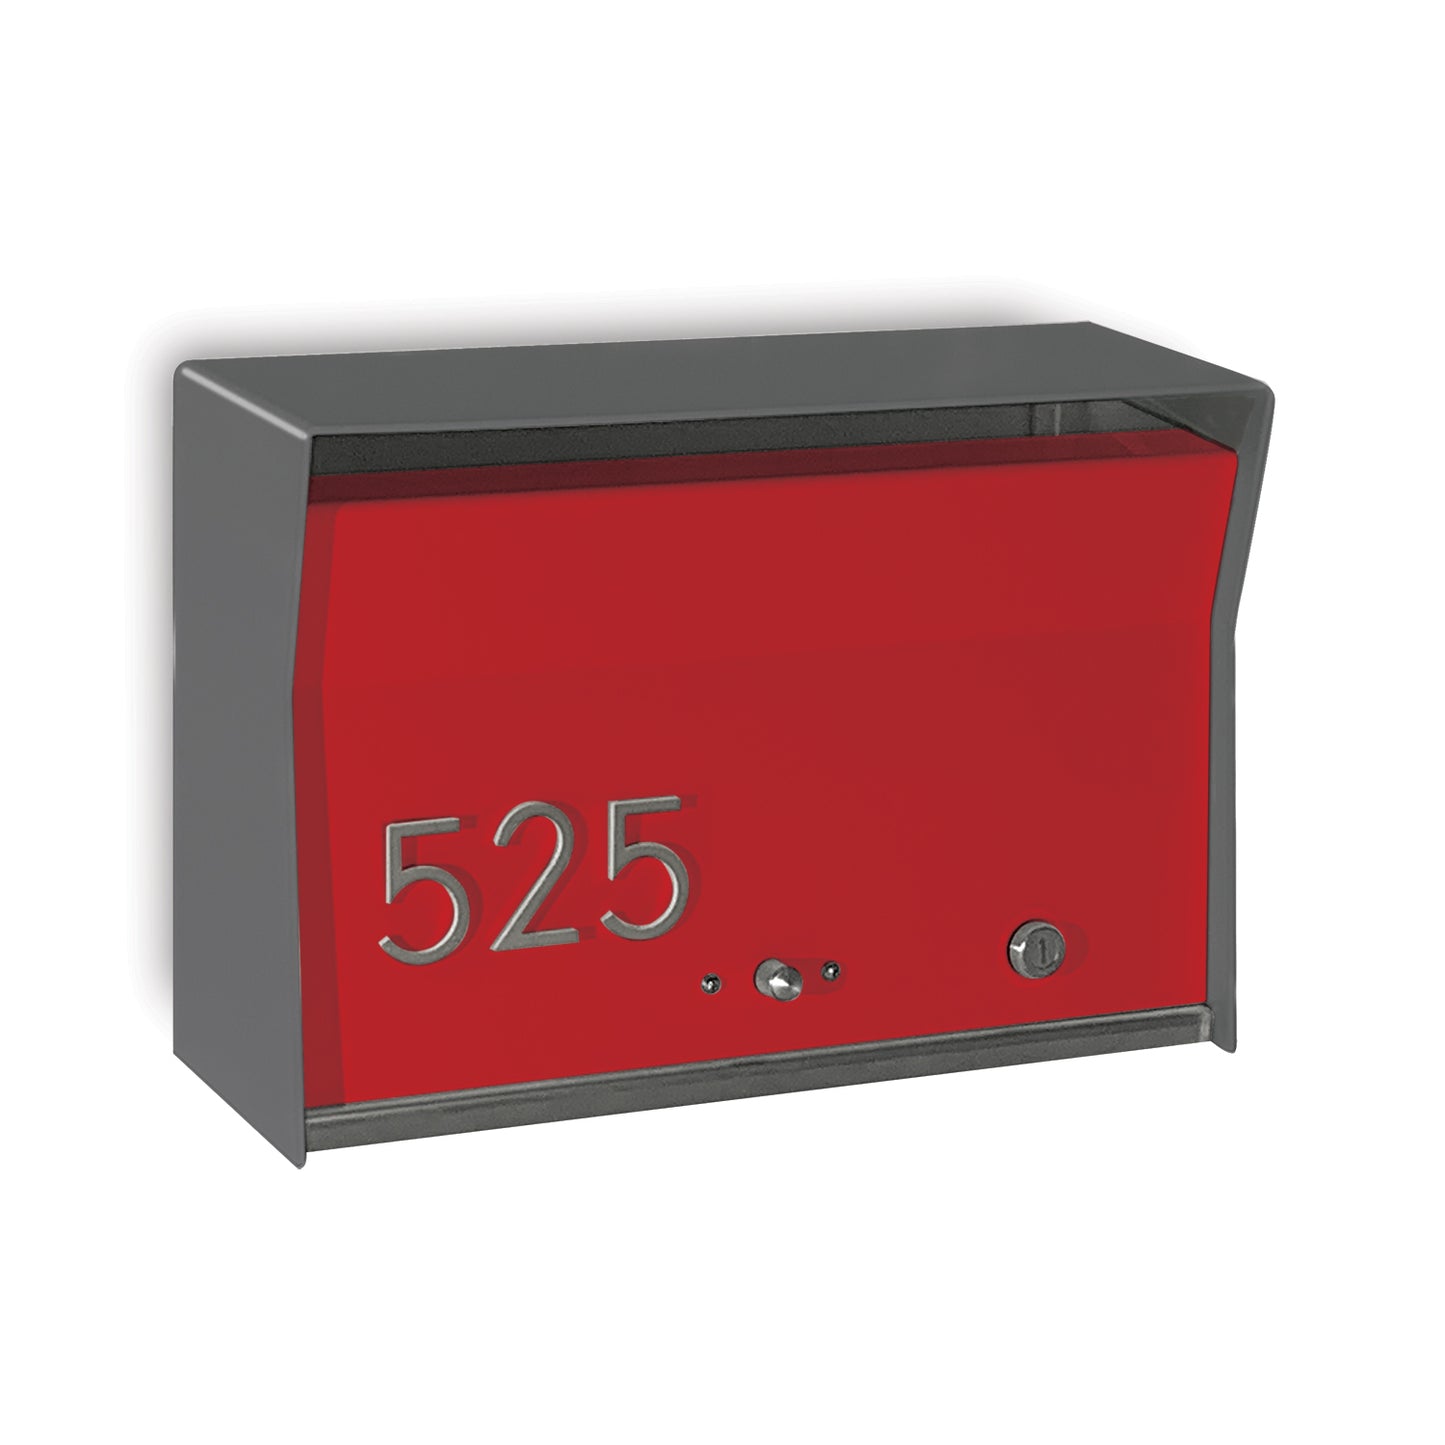 RetroBox Locking Wall Mount Mailbox in designer grey and firecracker red